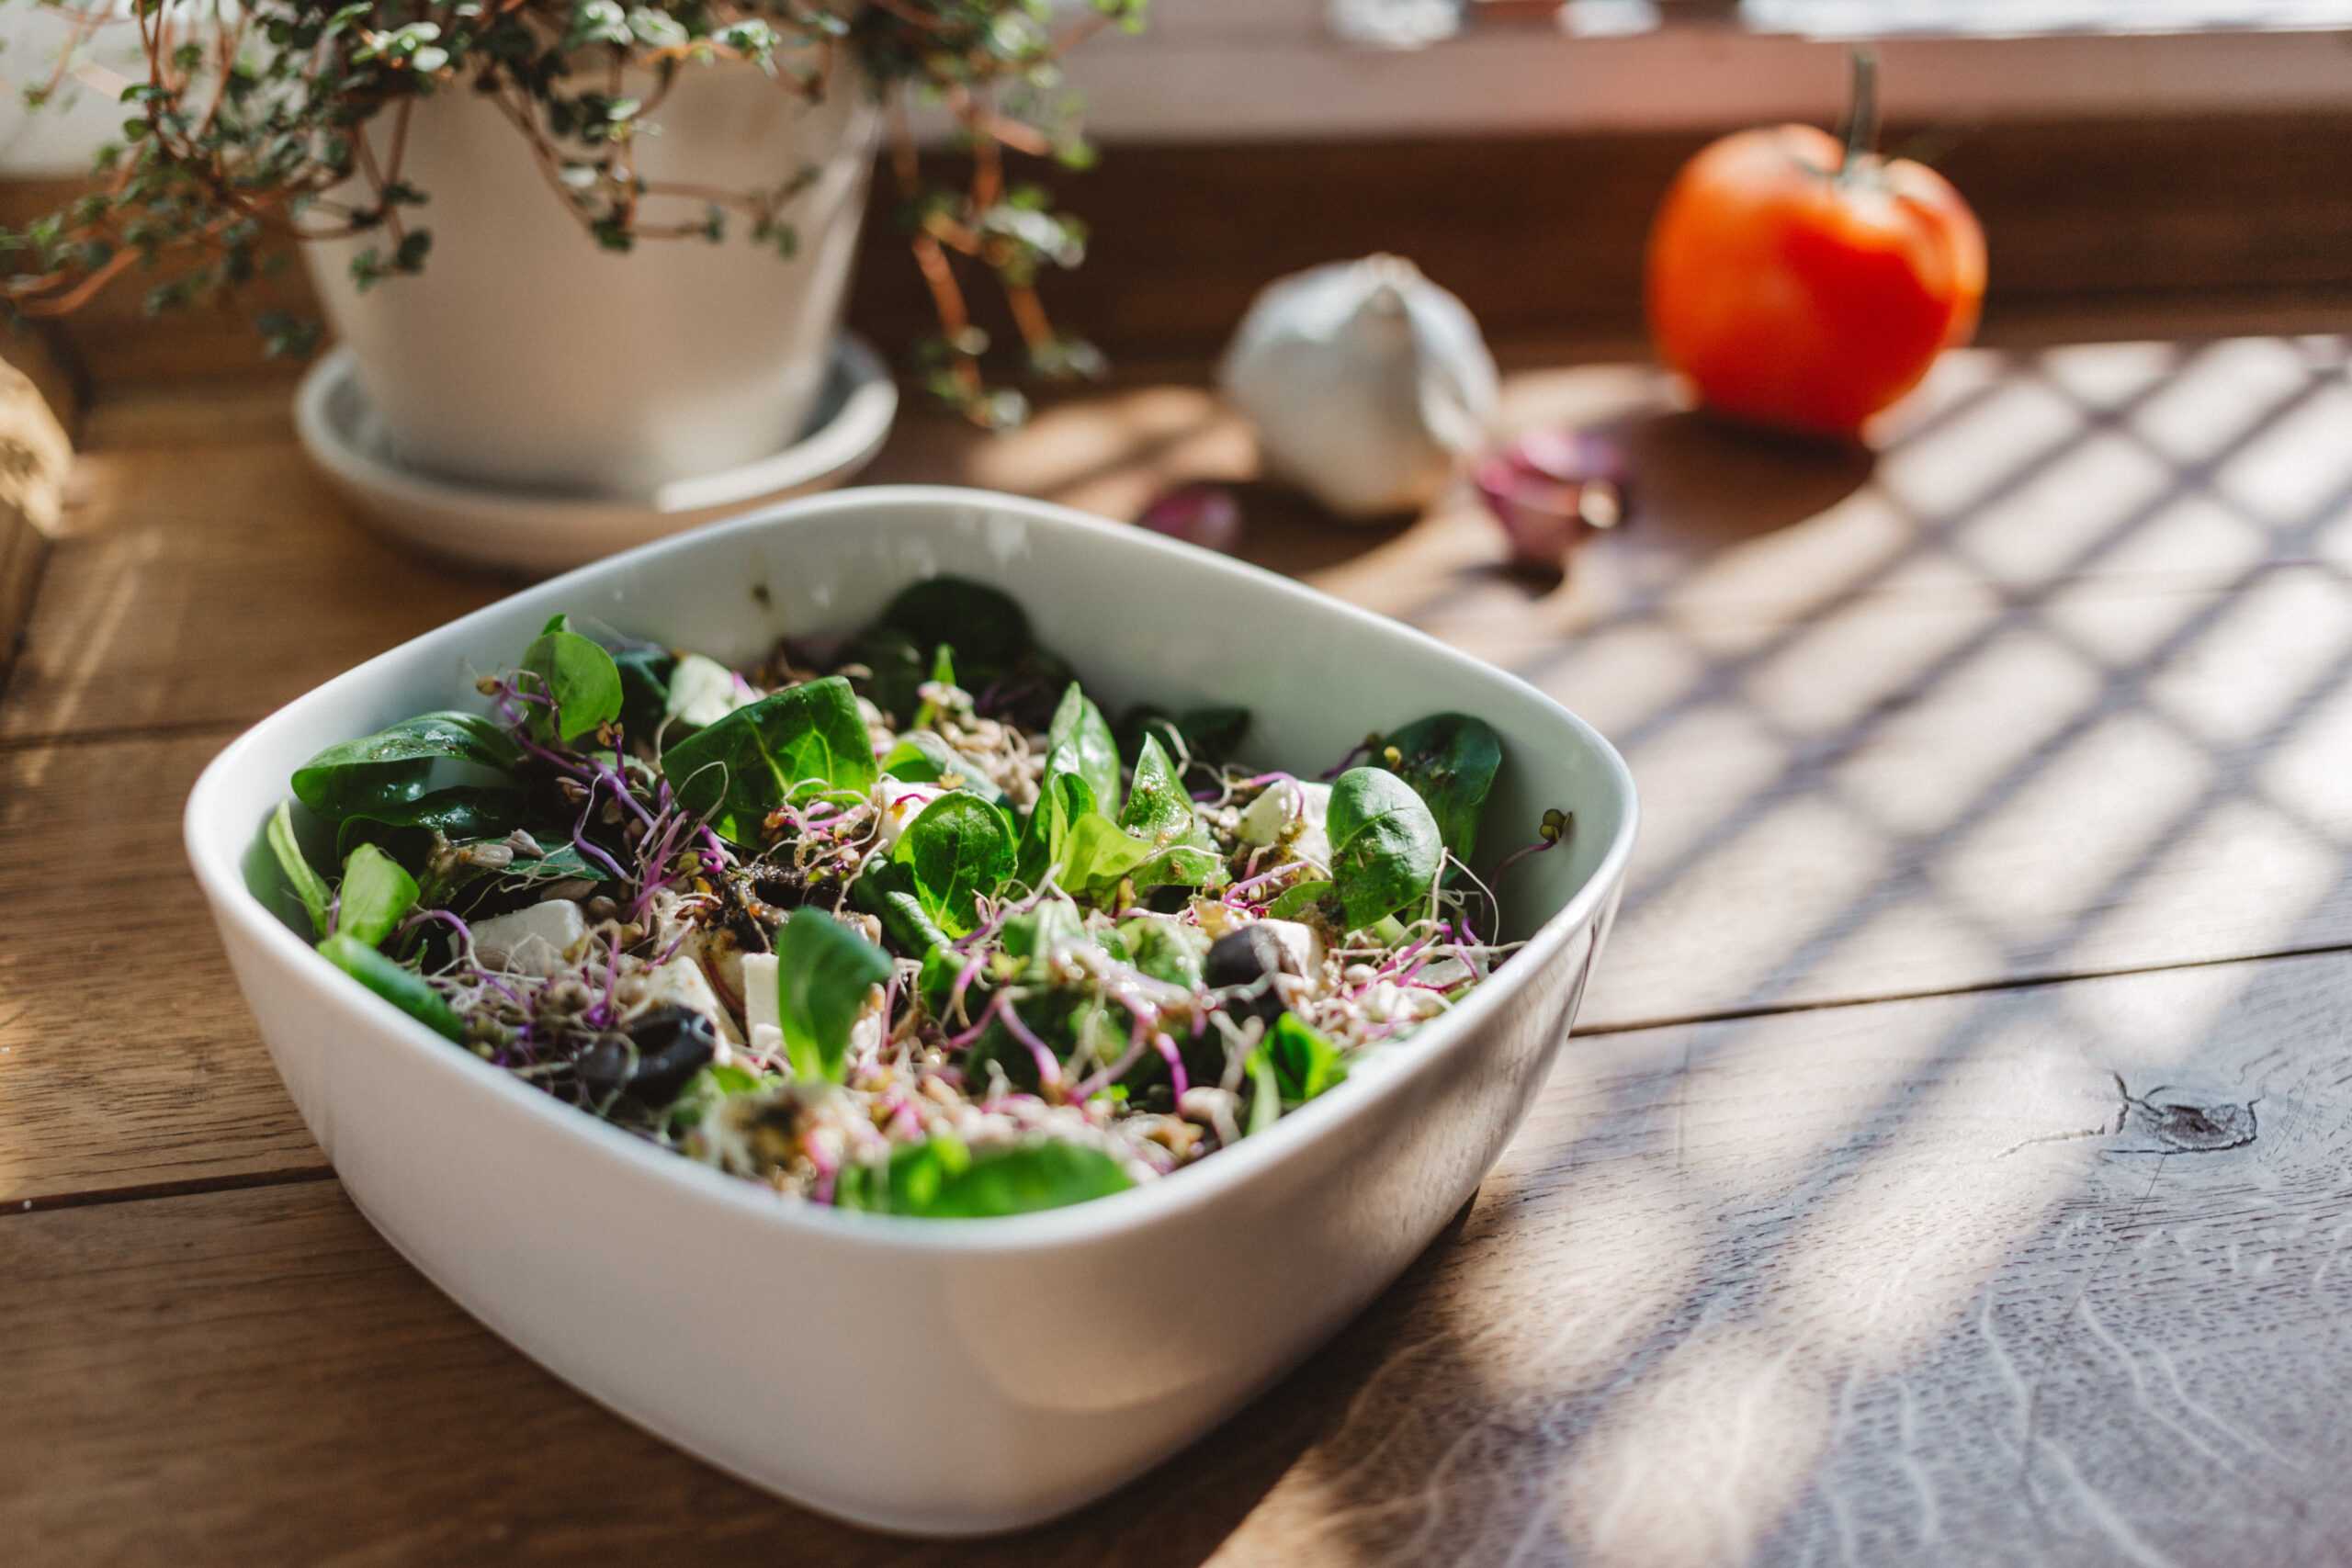 BeautyHack узнал, чем полезны разные сорта салата, и составил зеленое меню: детокс-салат с рукколой от Гвинет Пэлтроу, здоровый ланч от Жизель Бюндхен и еще 4 полезных рецепта от звезд